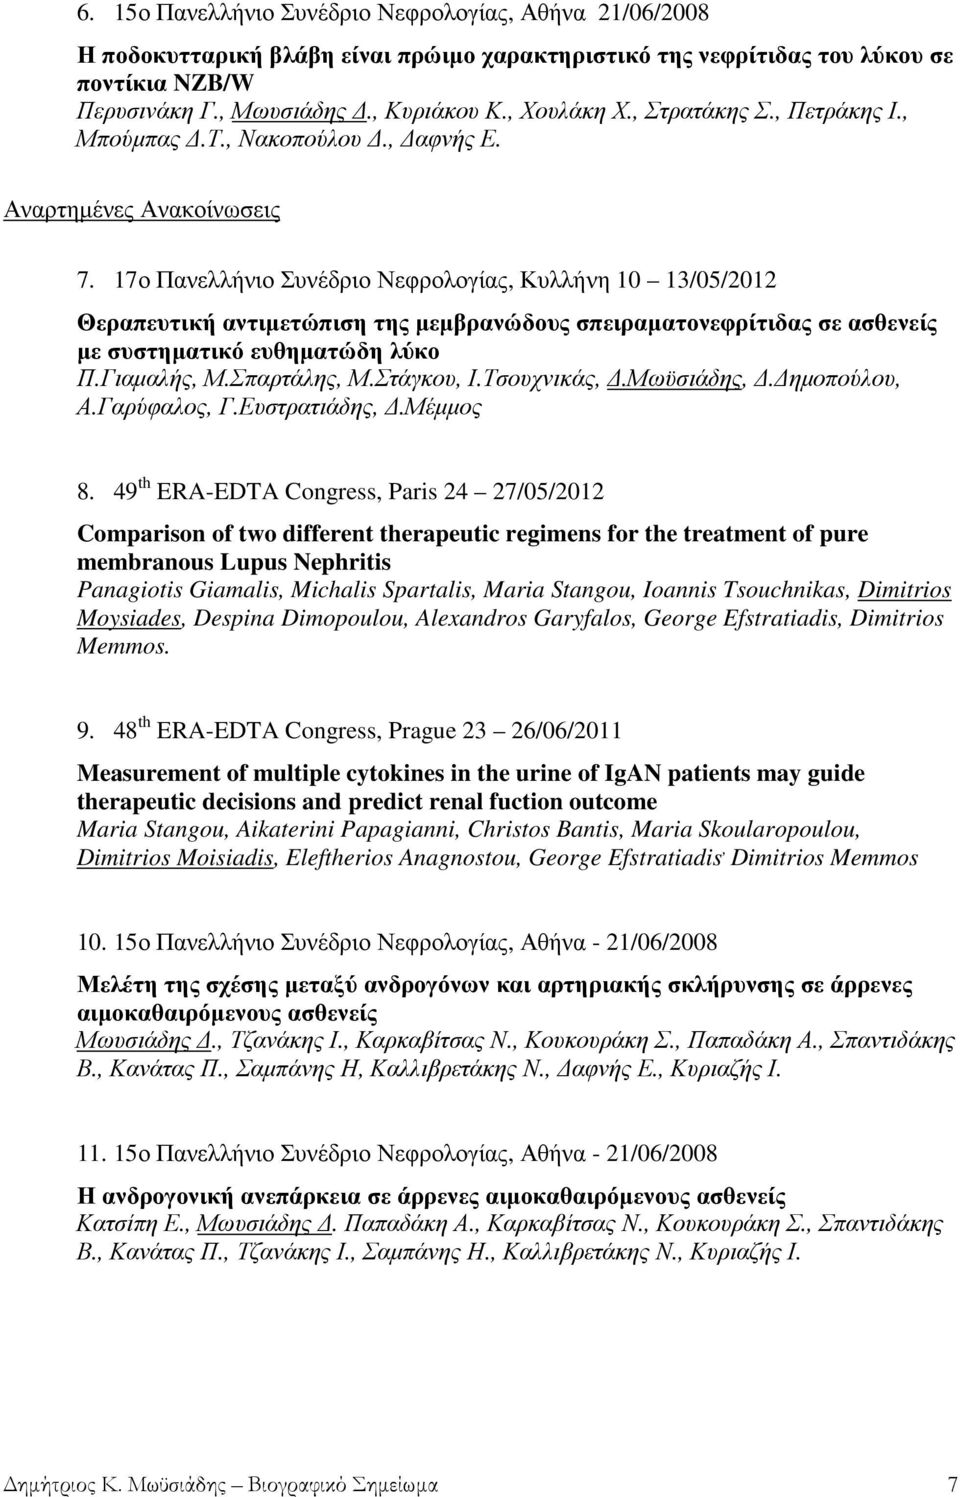 17ο Πανελλήνιο Συνέδριο Νεφρολογίας, Κυλλήνη 10 13/05/2012 Θεραπευτική αντιµετώπιση της µεµβρανώδους σπειραµατονεφρίτιδας σε ασθενείς µε συστηµατικό ευθηµατώδη λύκο Π.Γιαµαλής, Μ.Σπαρτάλης, Μ.